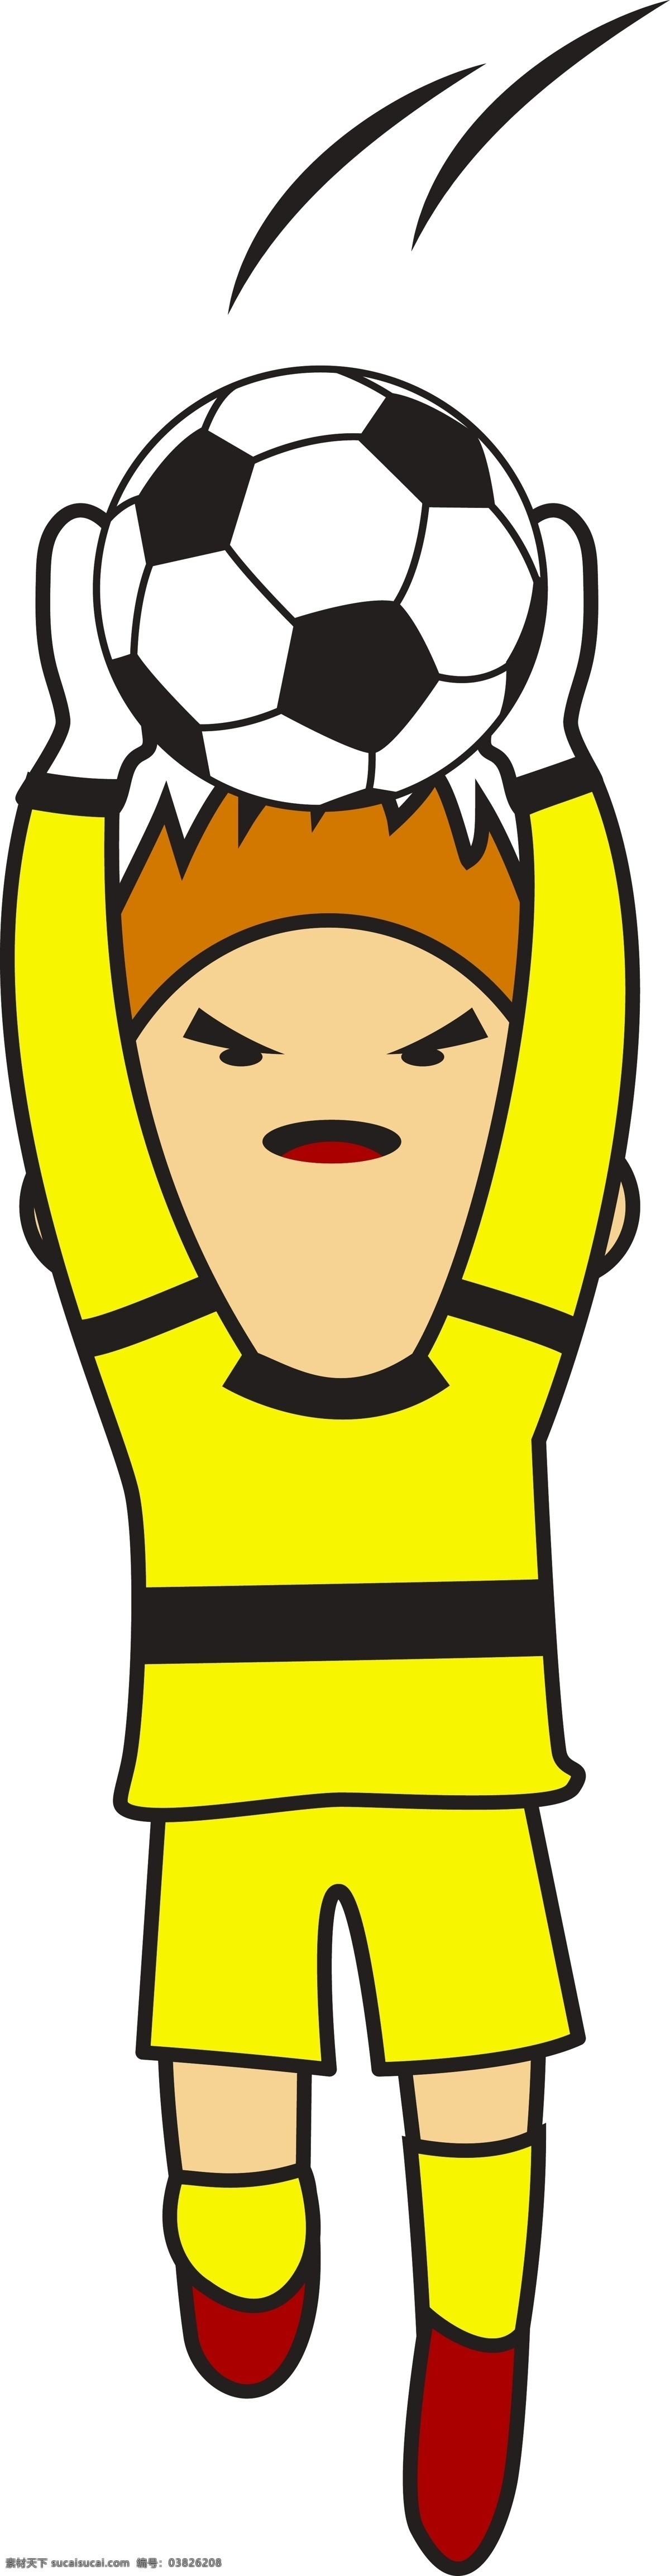 卡通 扑 球 姿势 矢量 卡通的 黄色的 球衣 运动员 足球运动员 足球守门员 足球 运动姿势 扑球姿势